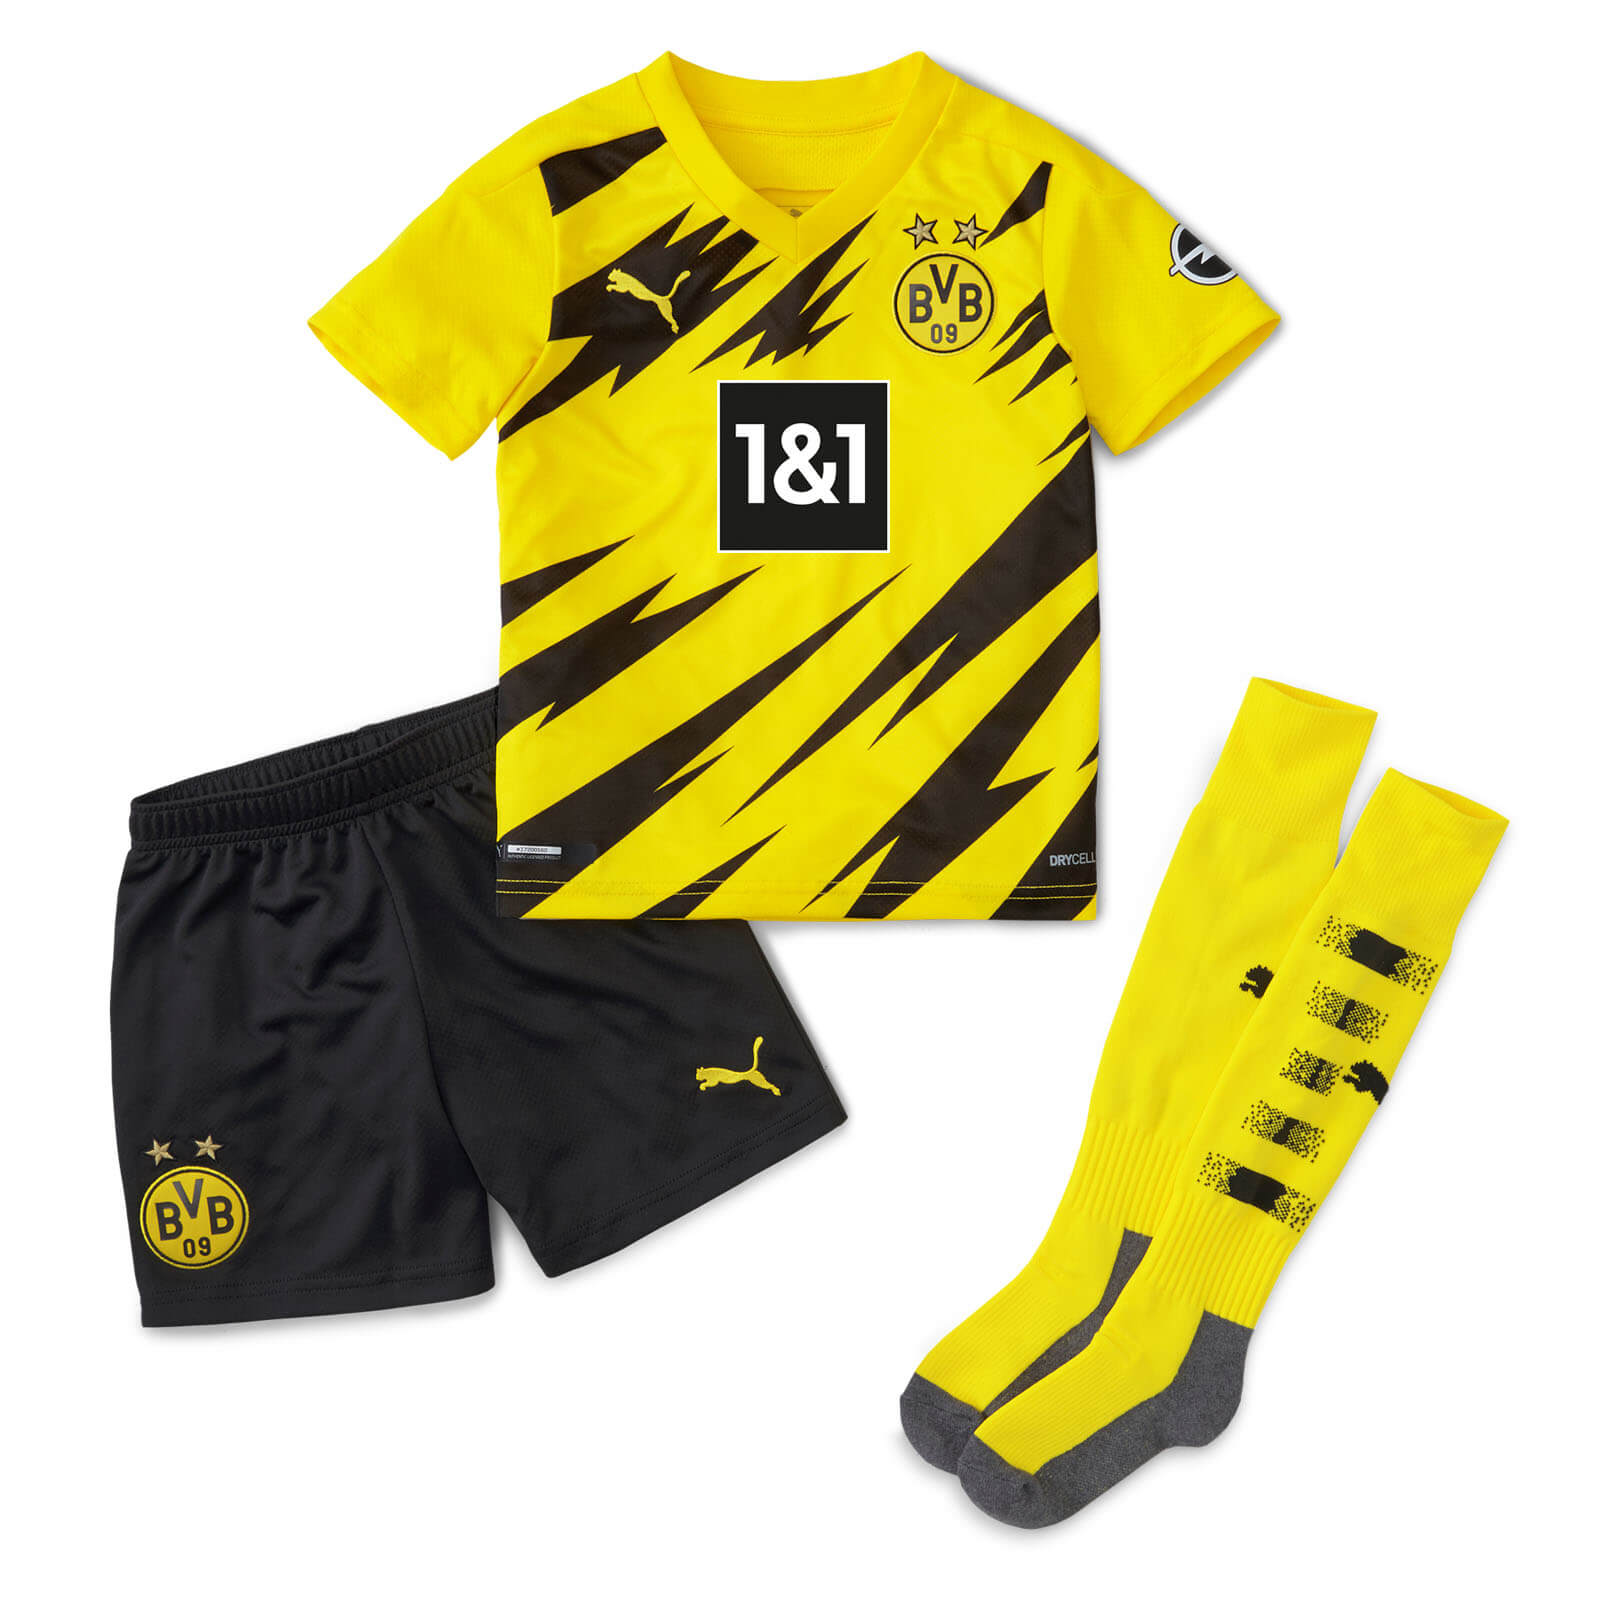 Futbalové kluby (všetky) | Puma Borussia Dortmund BVB 09 ...